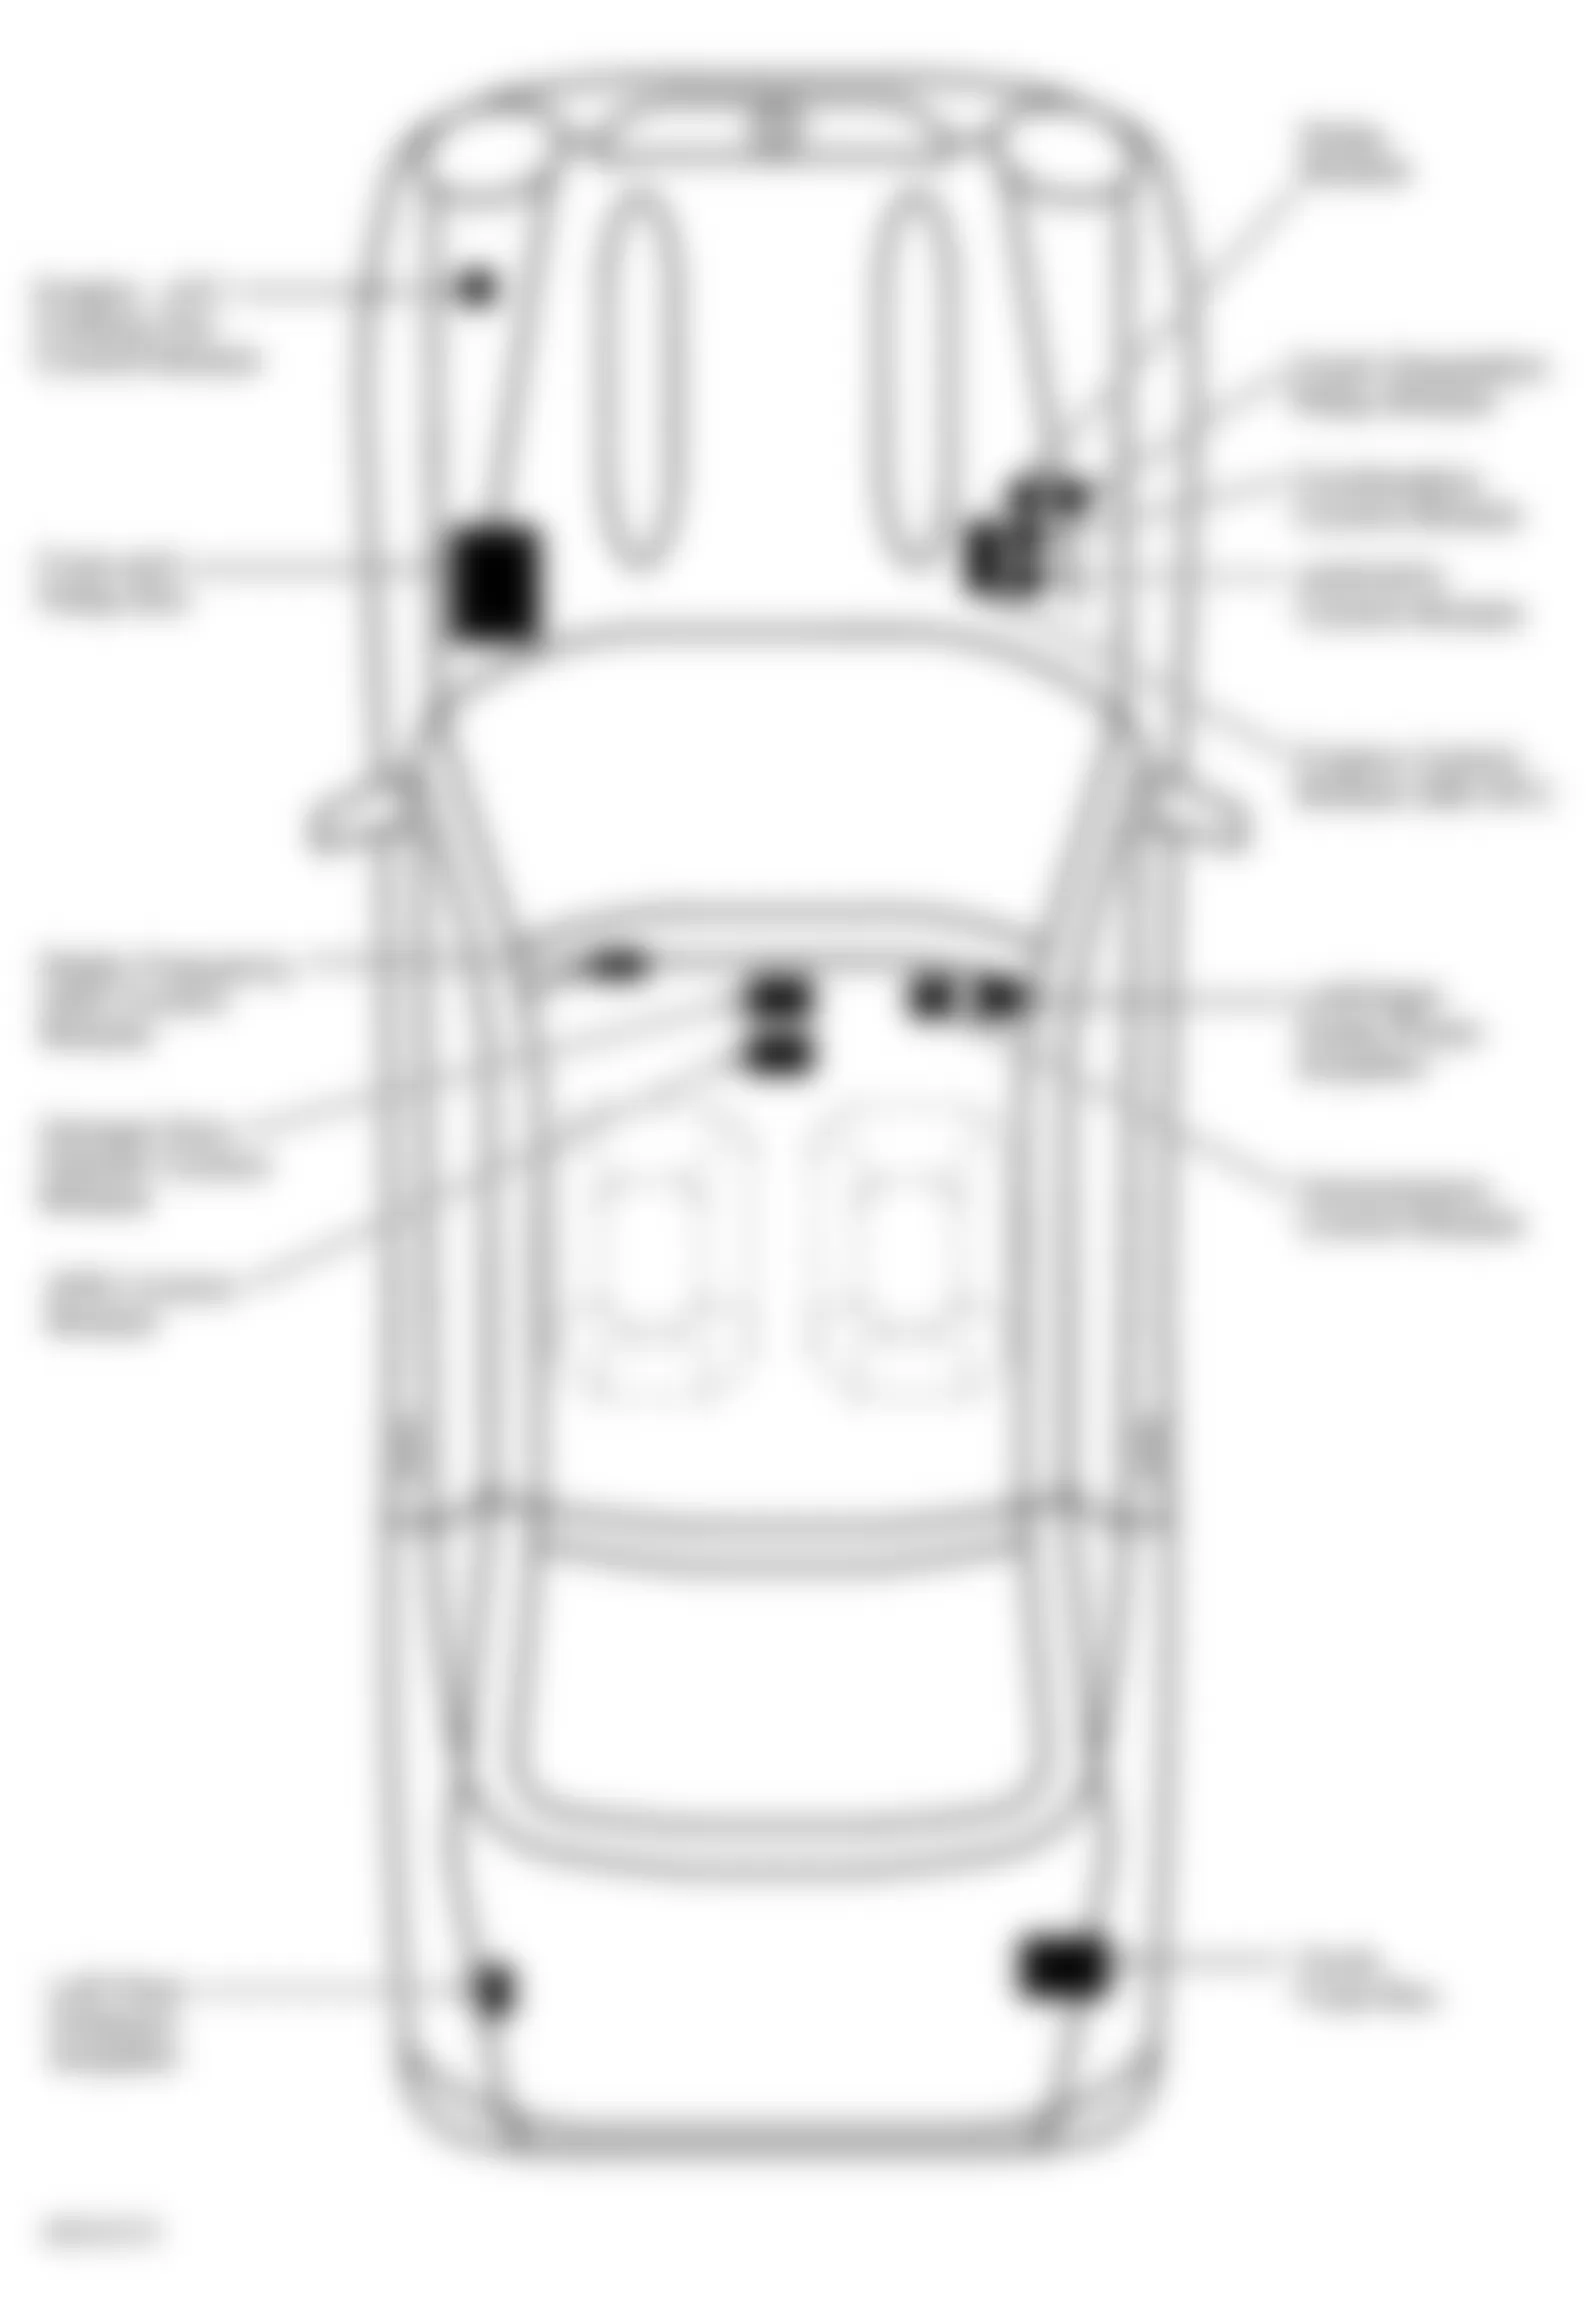 Mercedes-Benz SLK320 2003 - Component Locations -  Locating Trunk Fuse Box F4 (1 Of 2)